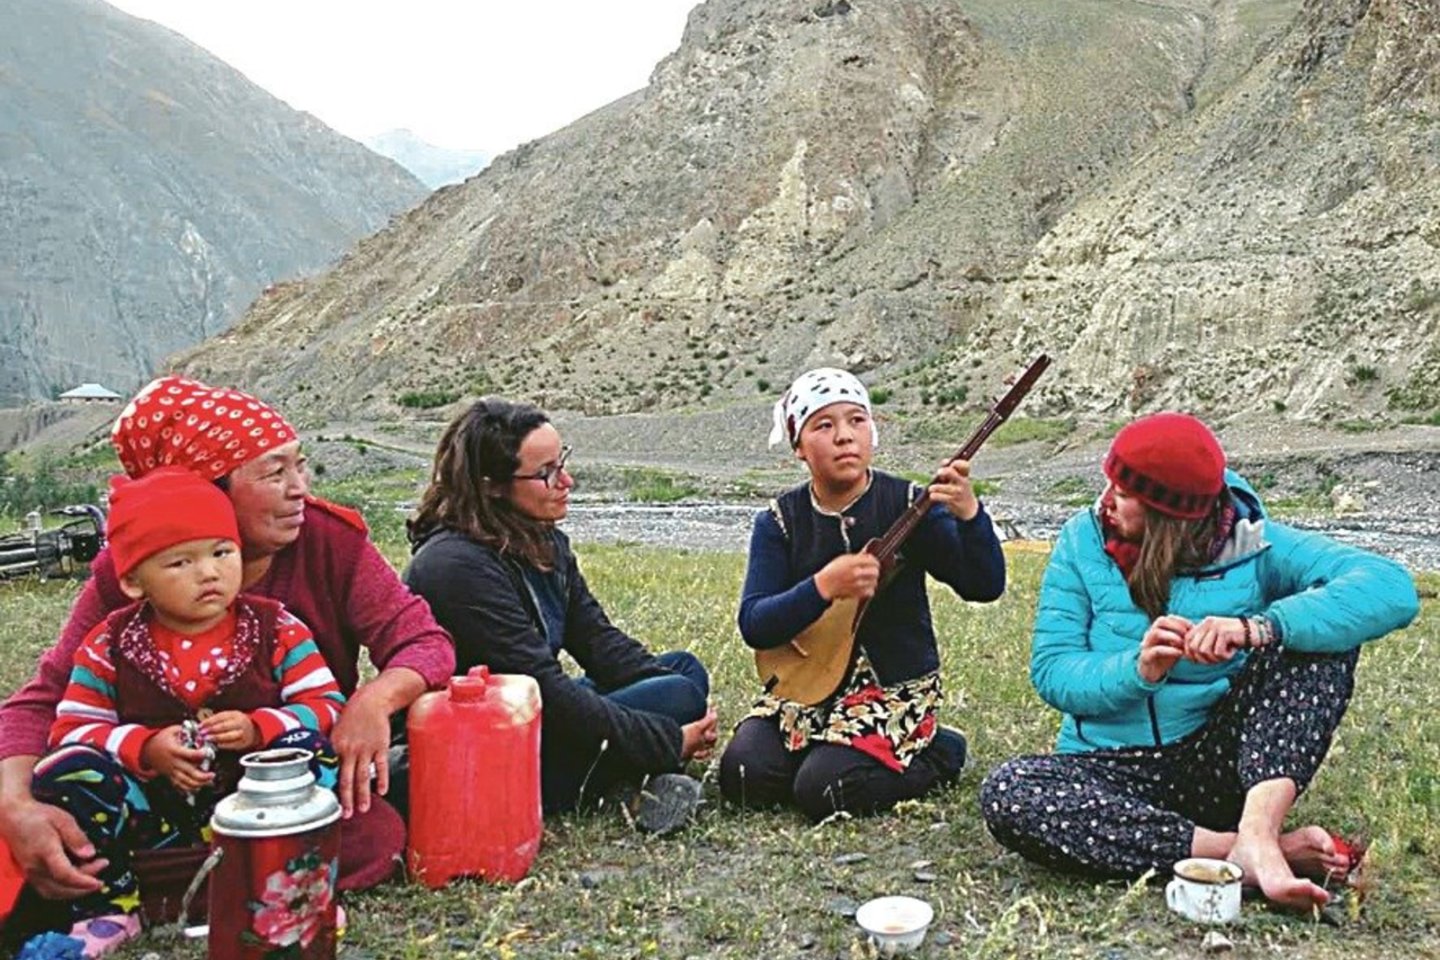  Kirgizai juos pavaišino arbata ir pagrojo.